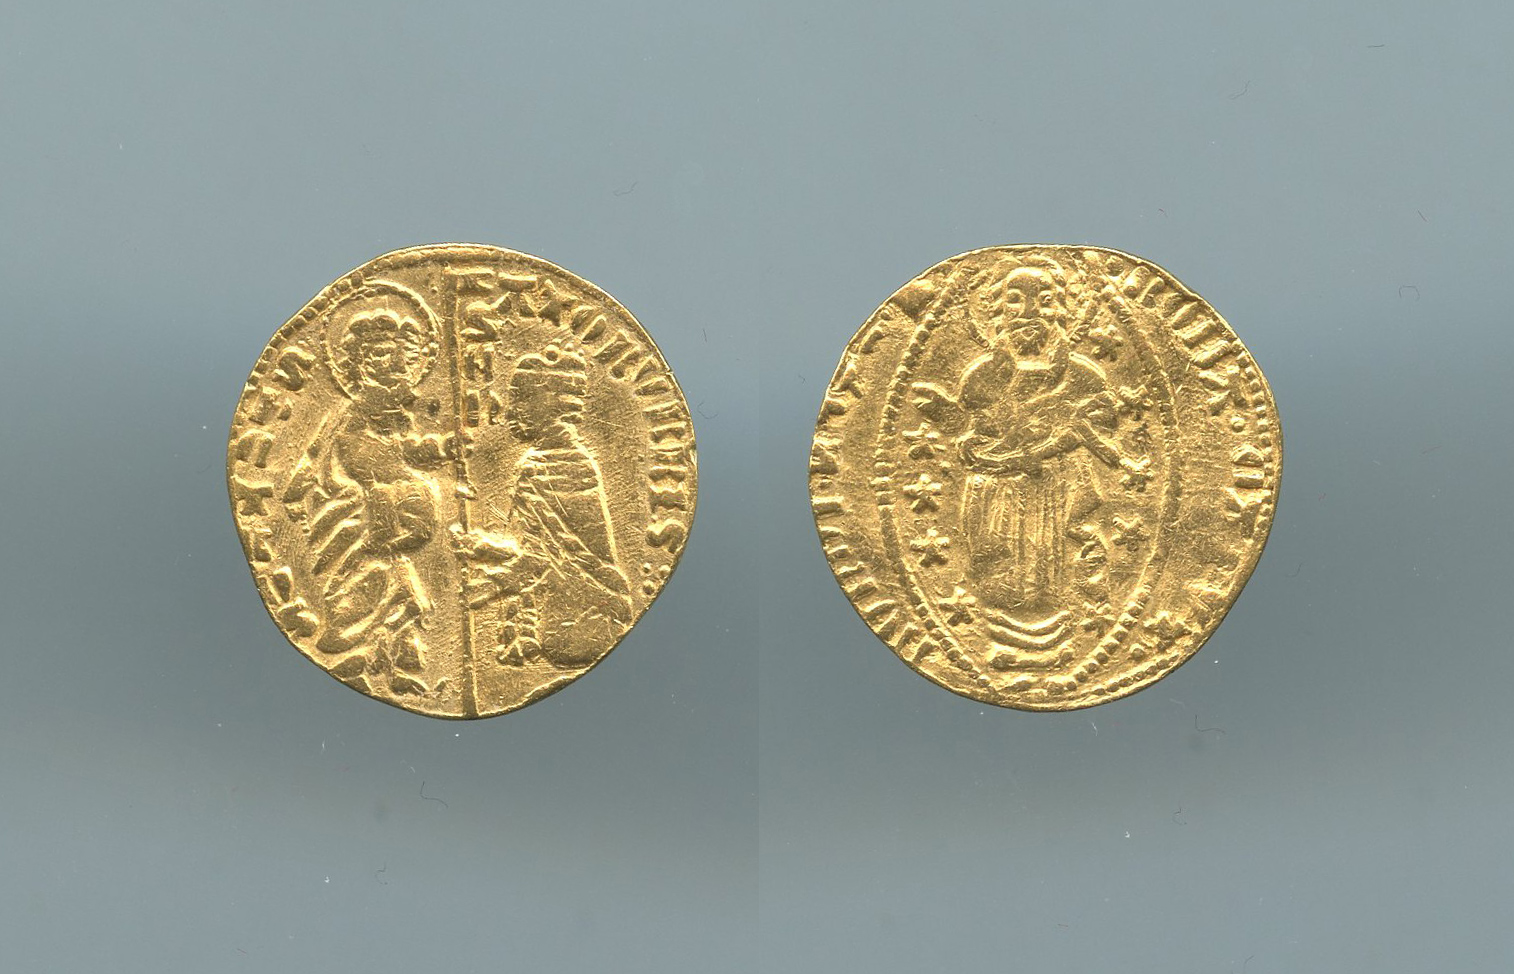 ROMA, Senato Romano (1184-1447) Ducato